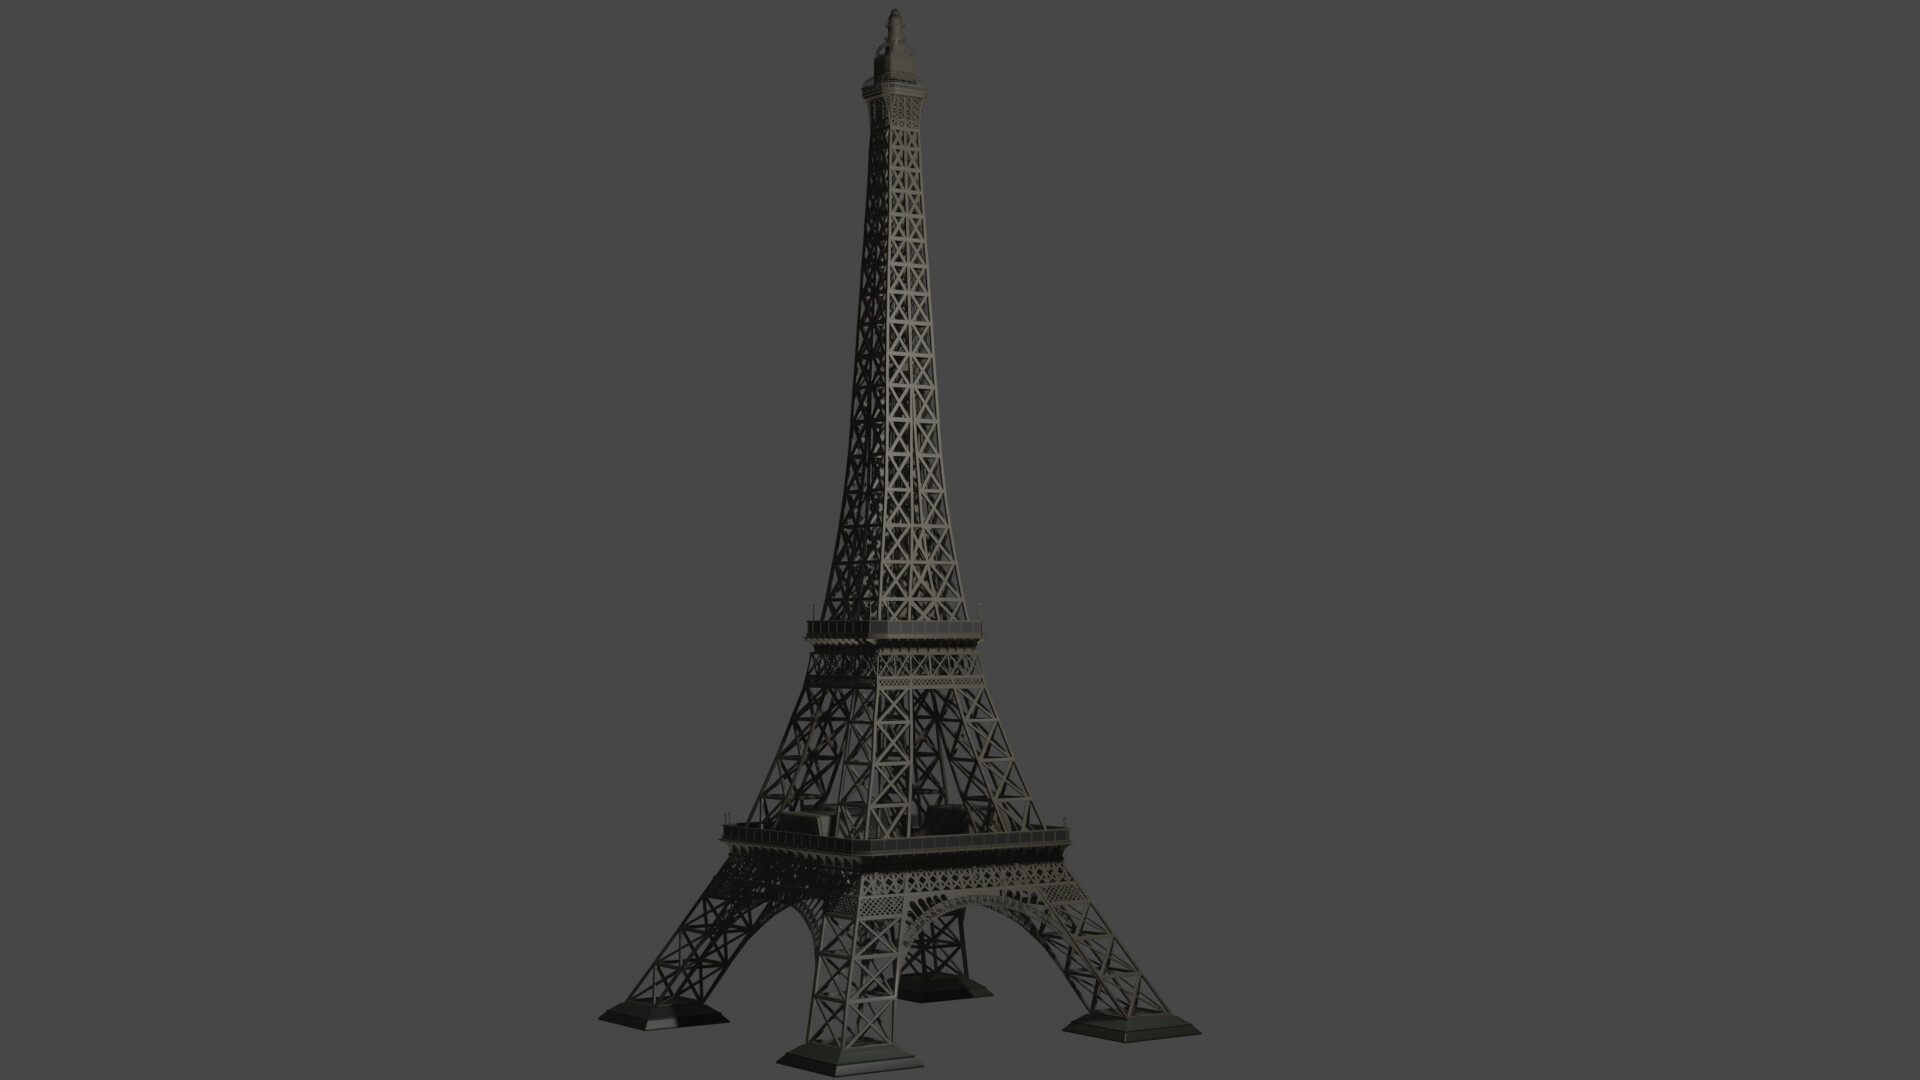 Khám phá thế giới tuyệt vời và đầy mơ ước với mô hình Eiffel Tower 3D vô cùng sống động và sinh động. Mỗi chi tiết trên mô hình đều rất chân thật và được thiết kế với tình yêu, giúp bạn trải nghiệm cảm giác như đang đứng trên chính đài quan sát của tháp Eiffel nổi tiếng.